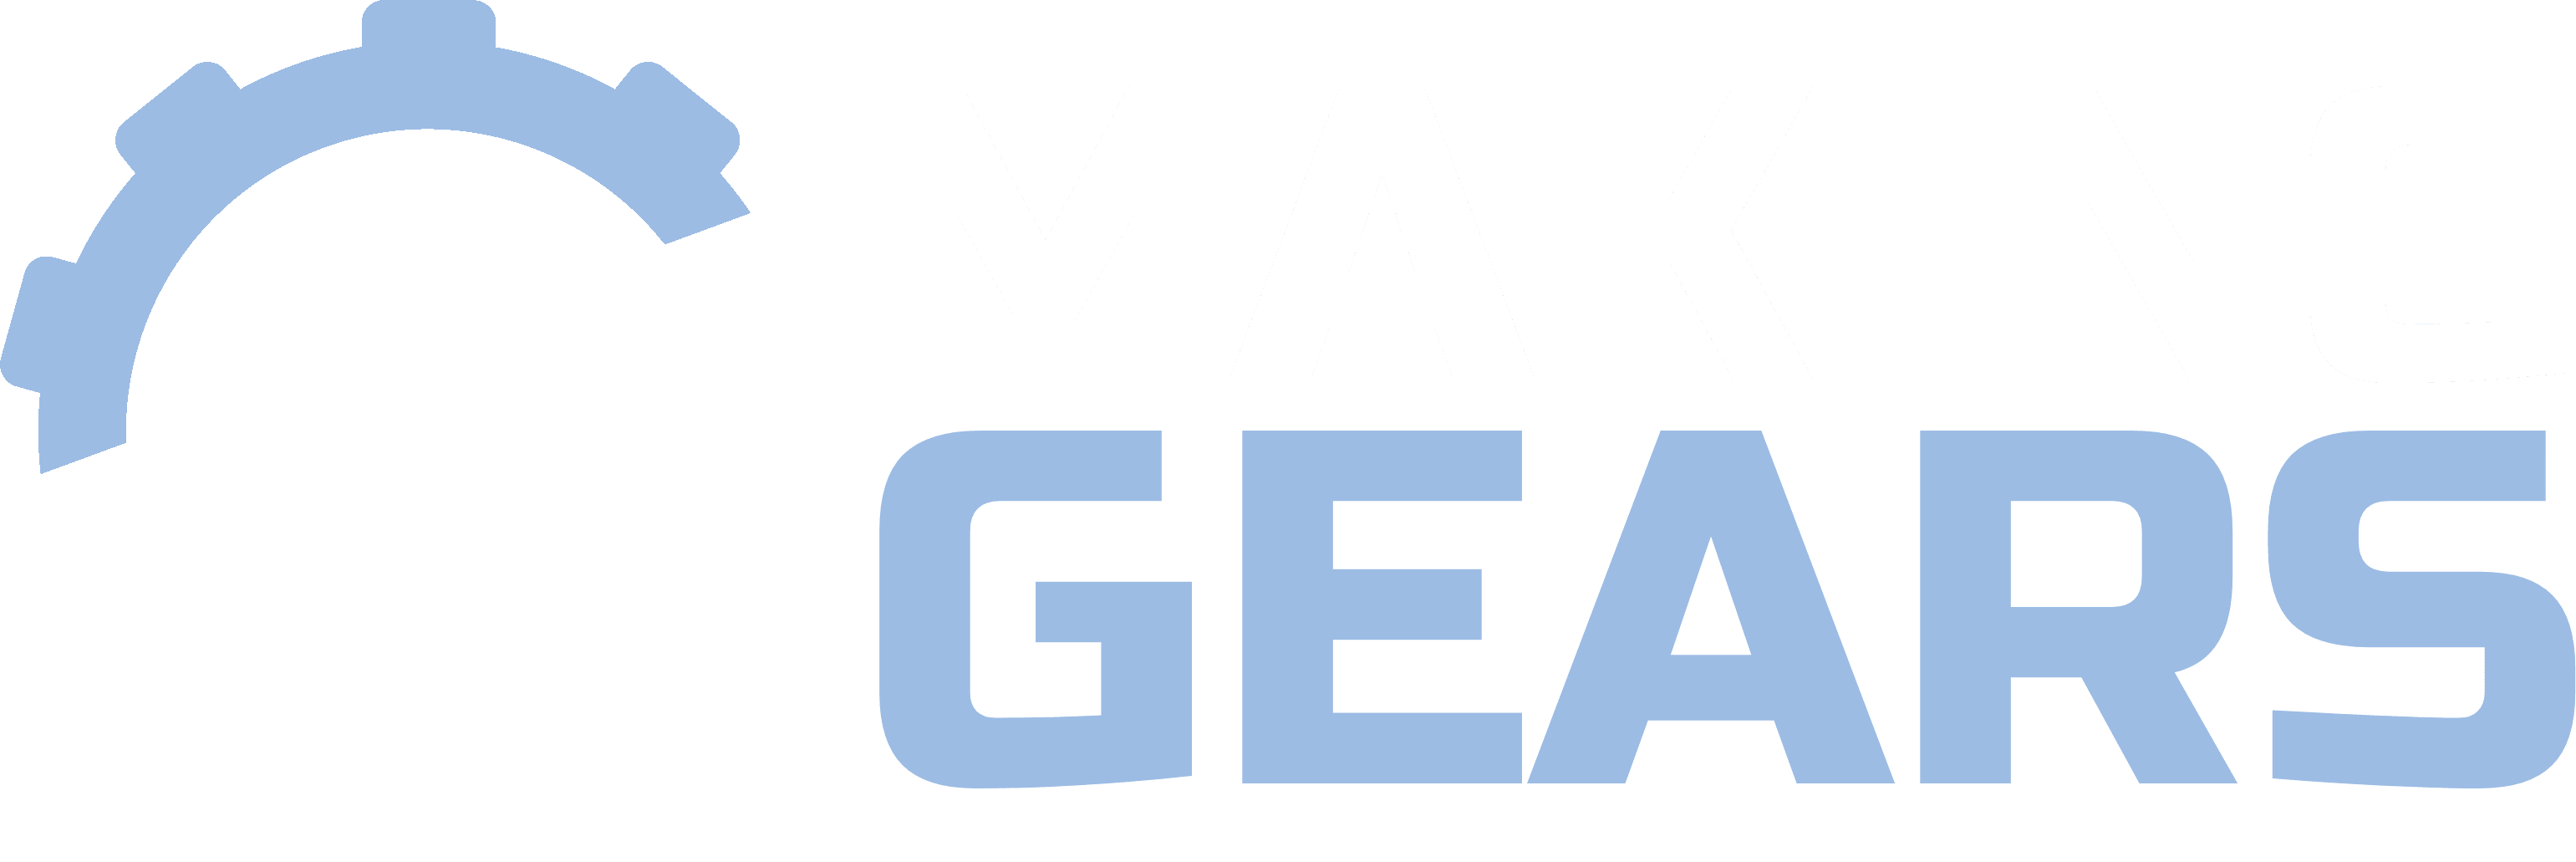 Making Gears Siglă